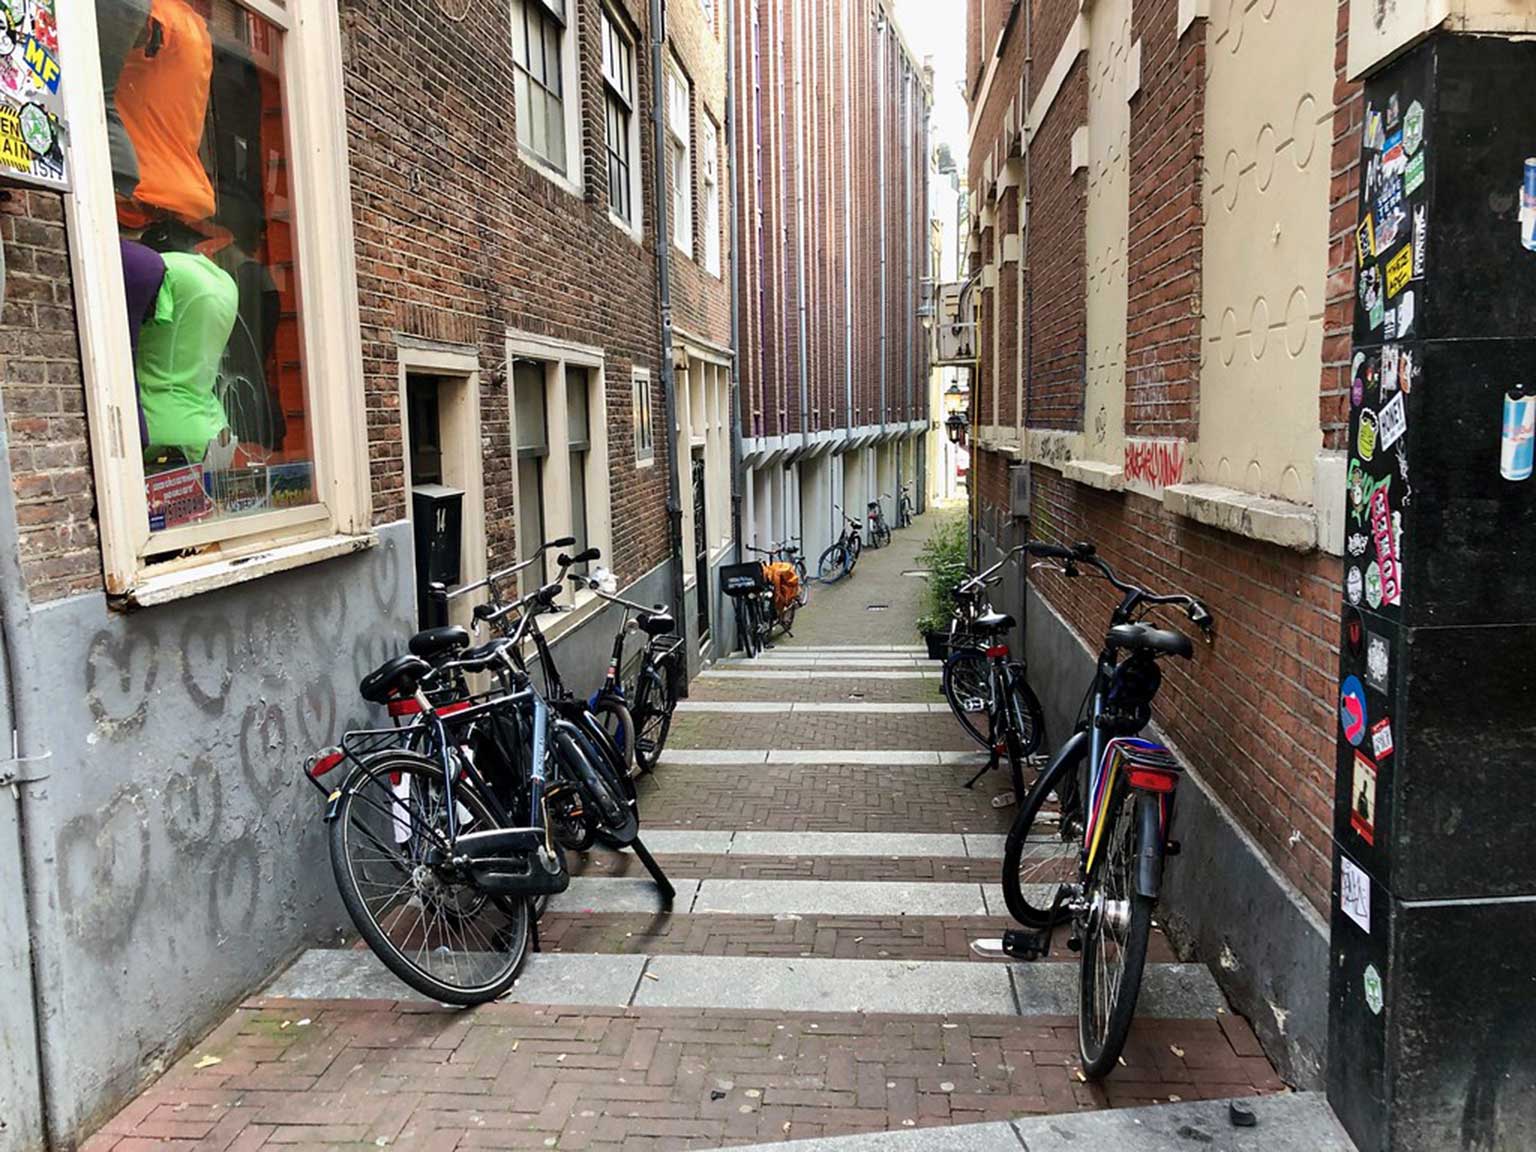 Smaksteeg gezien vanaf de Nieuwendijk in Amsterdam, met duidelijk hoogteverschil